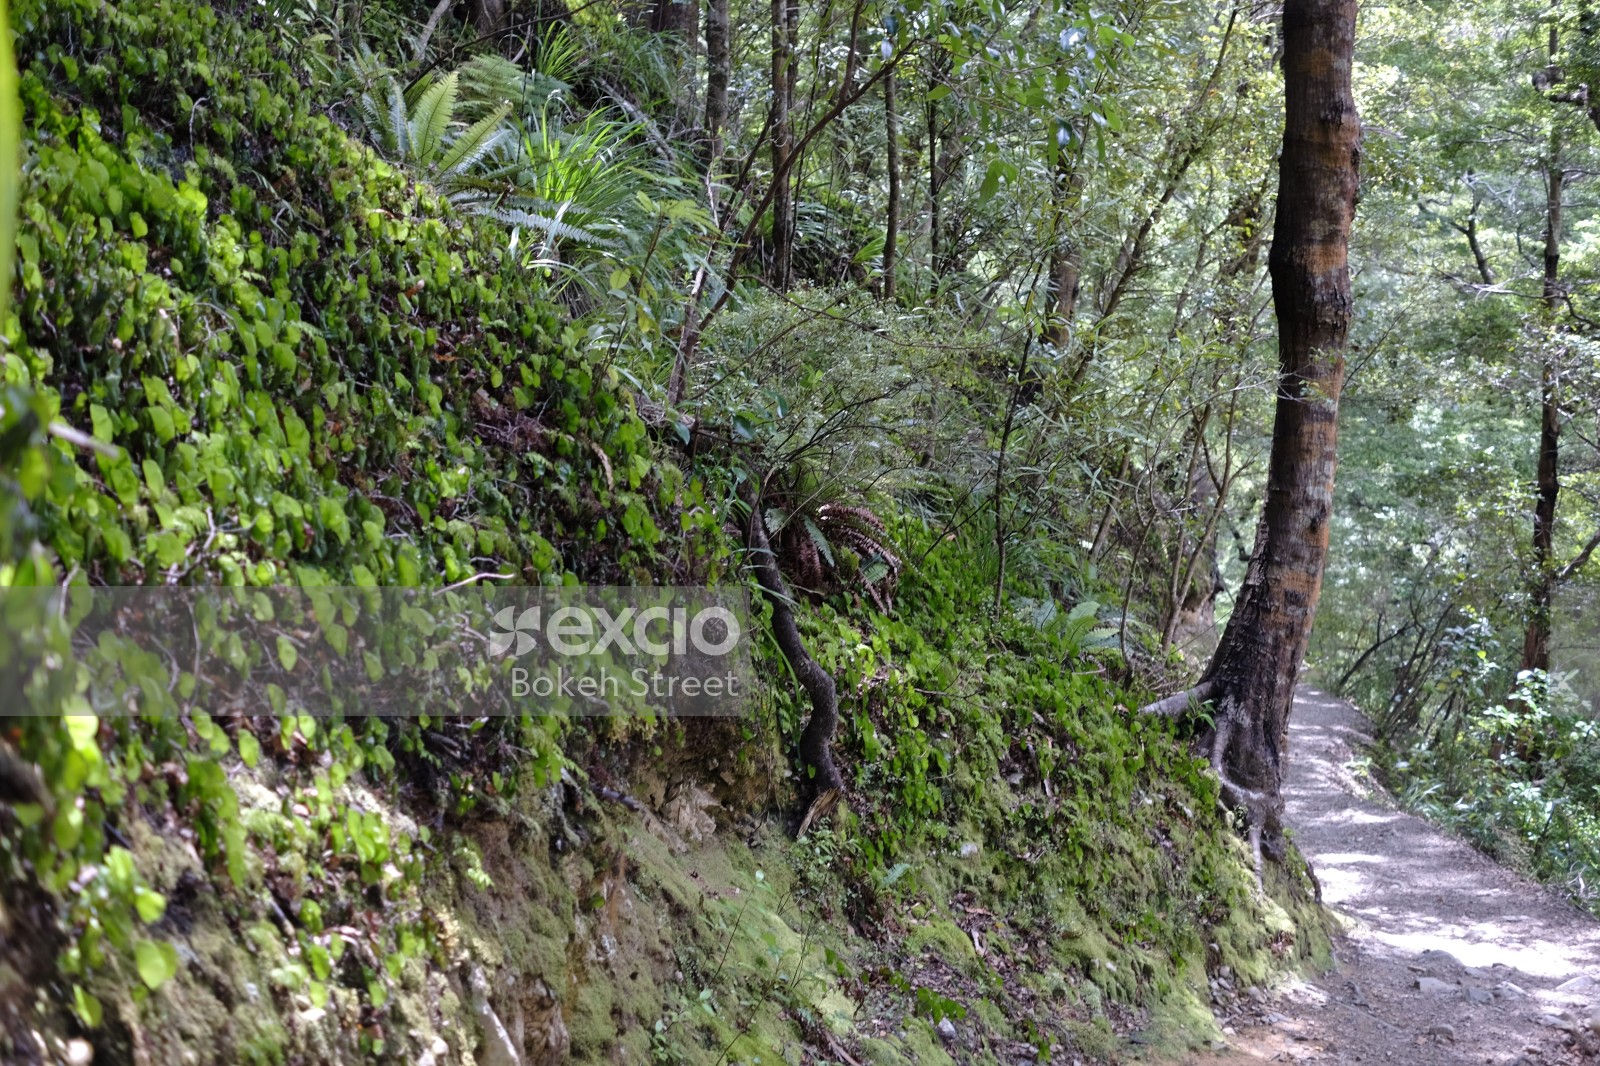 Foliage and a trail near Wainuiomata